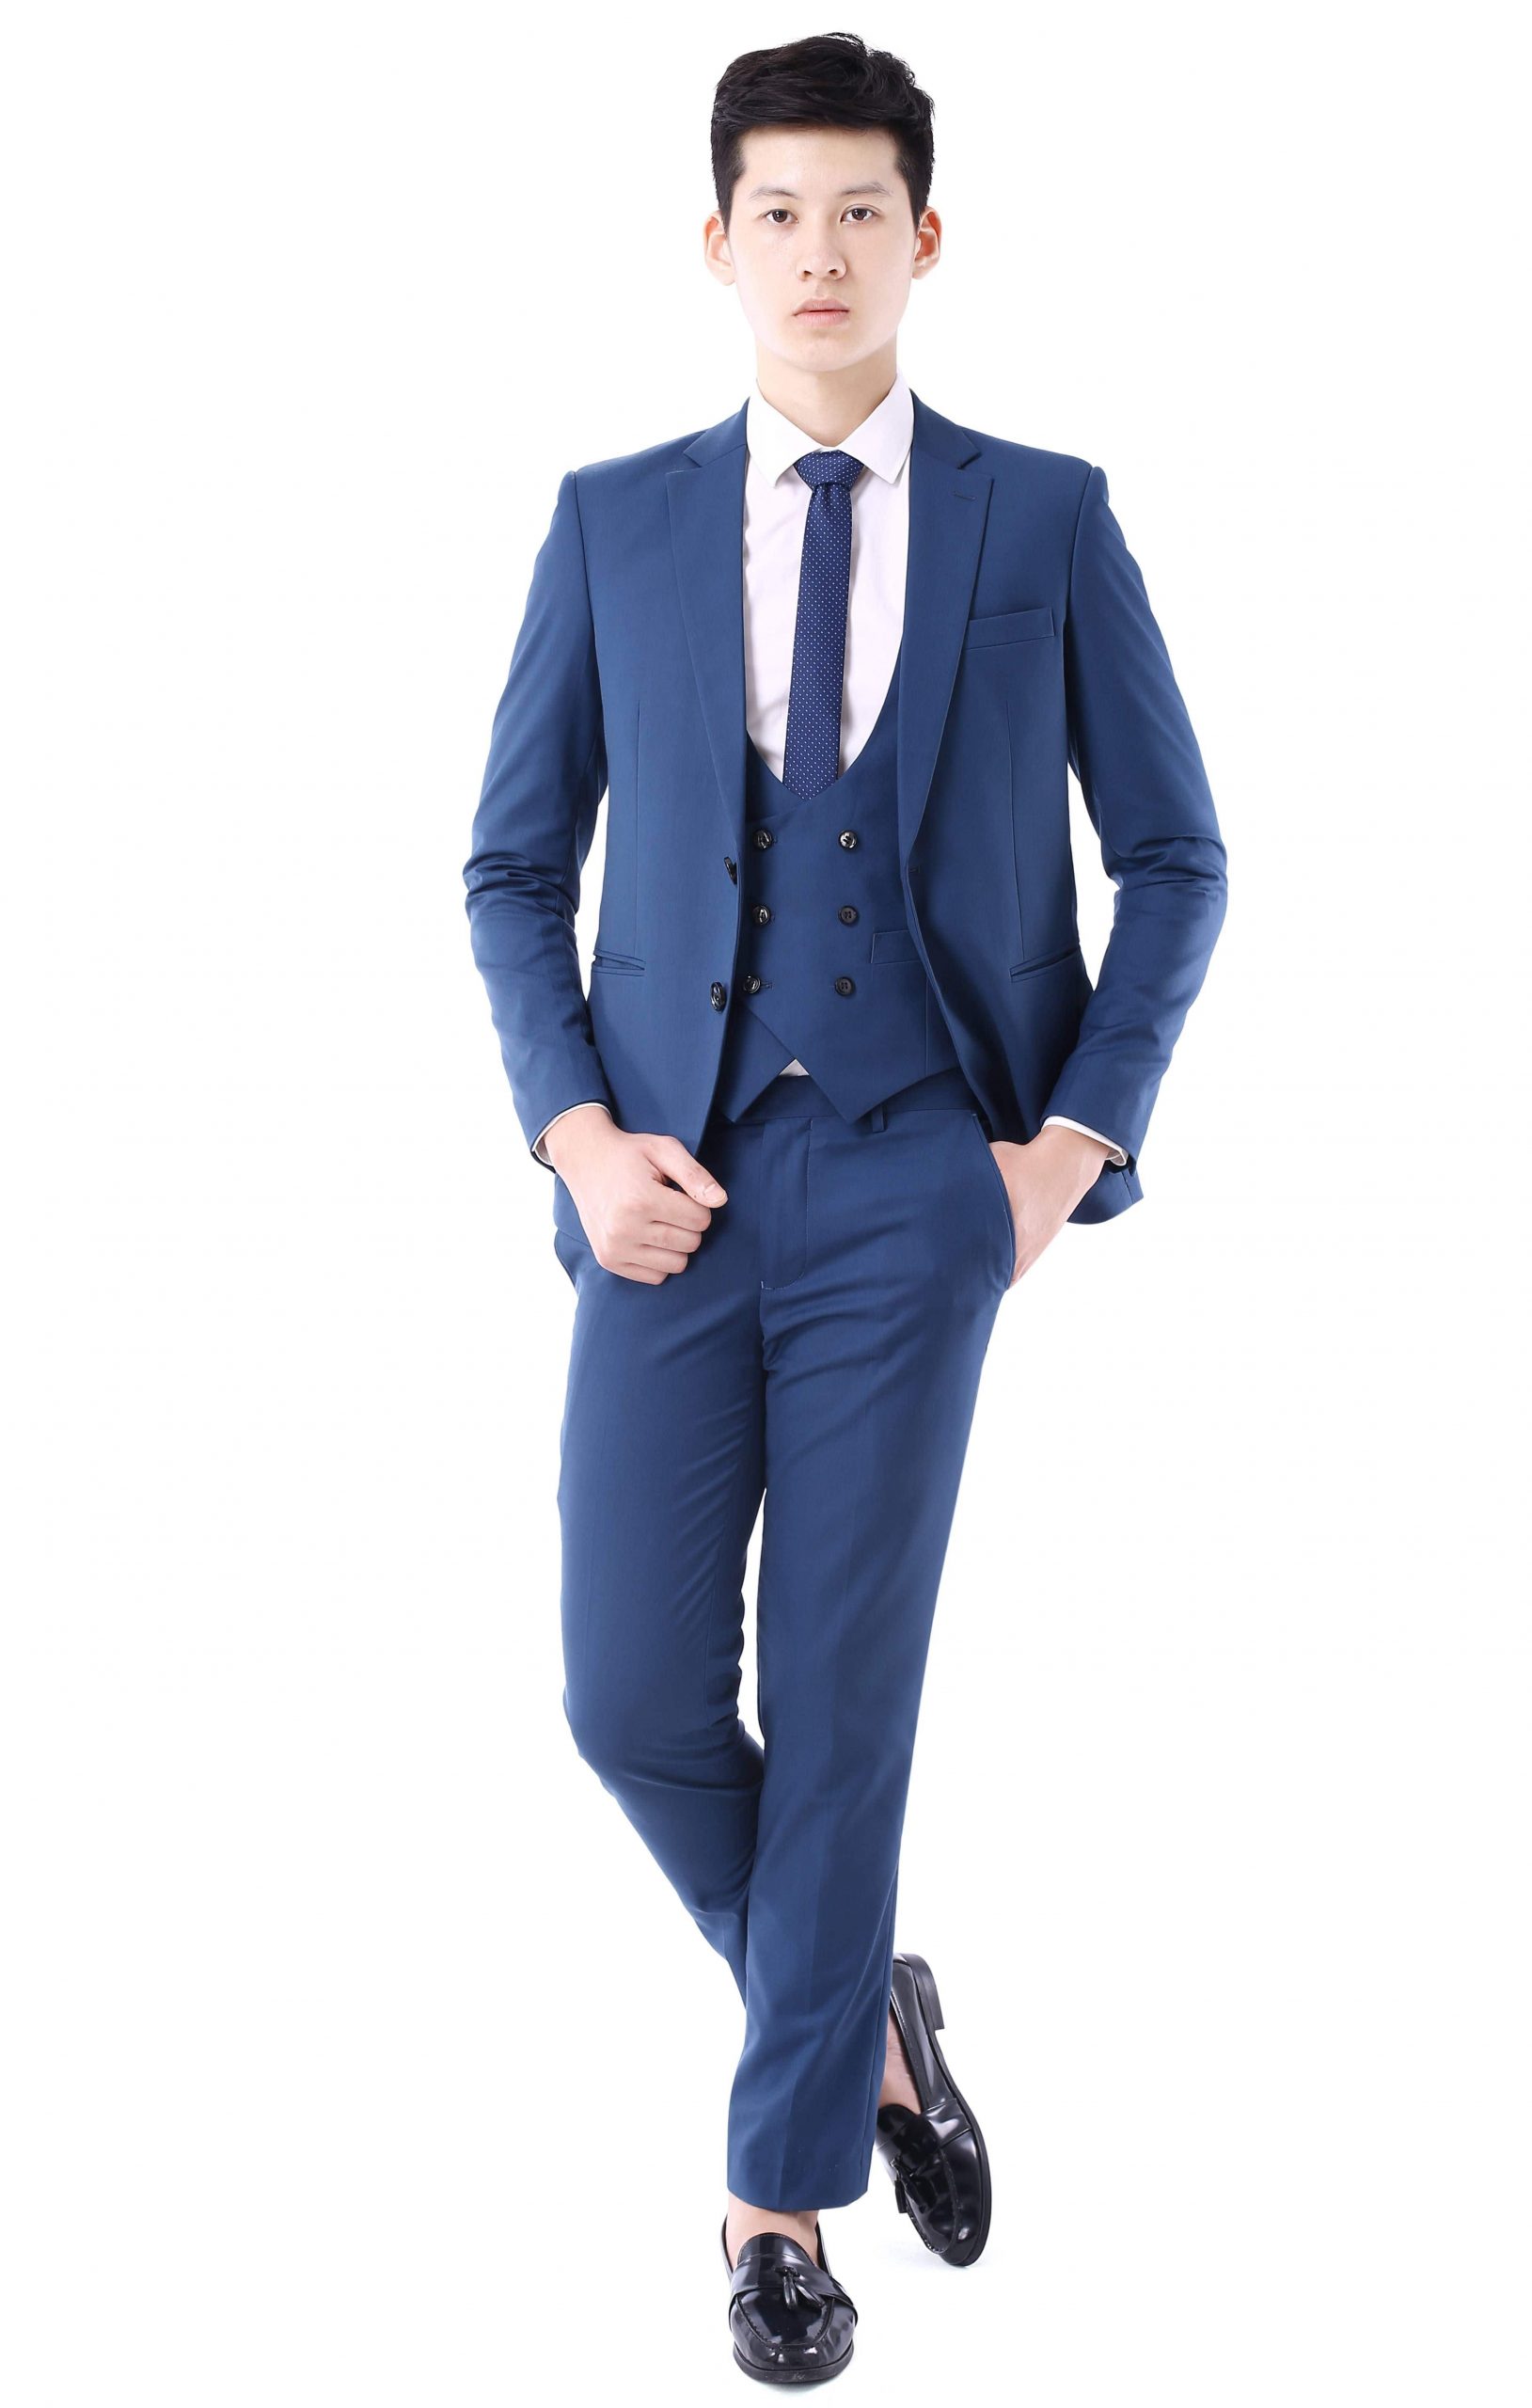 Suit nam là một set đồ hoàn chỉnh thể hiện được phong cách trẻ trung lịch lãm cho người mặc